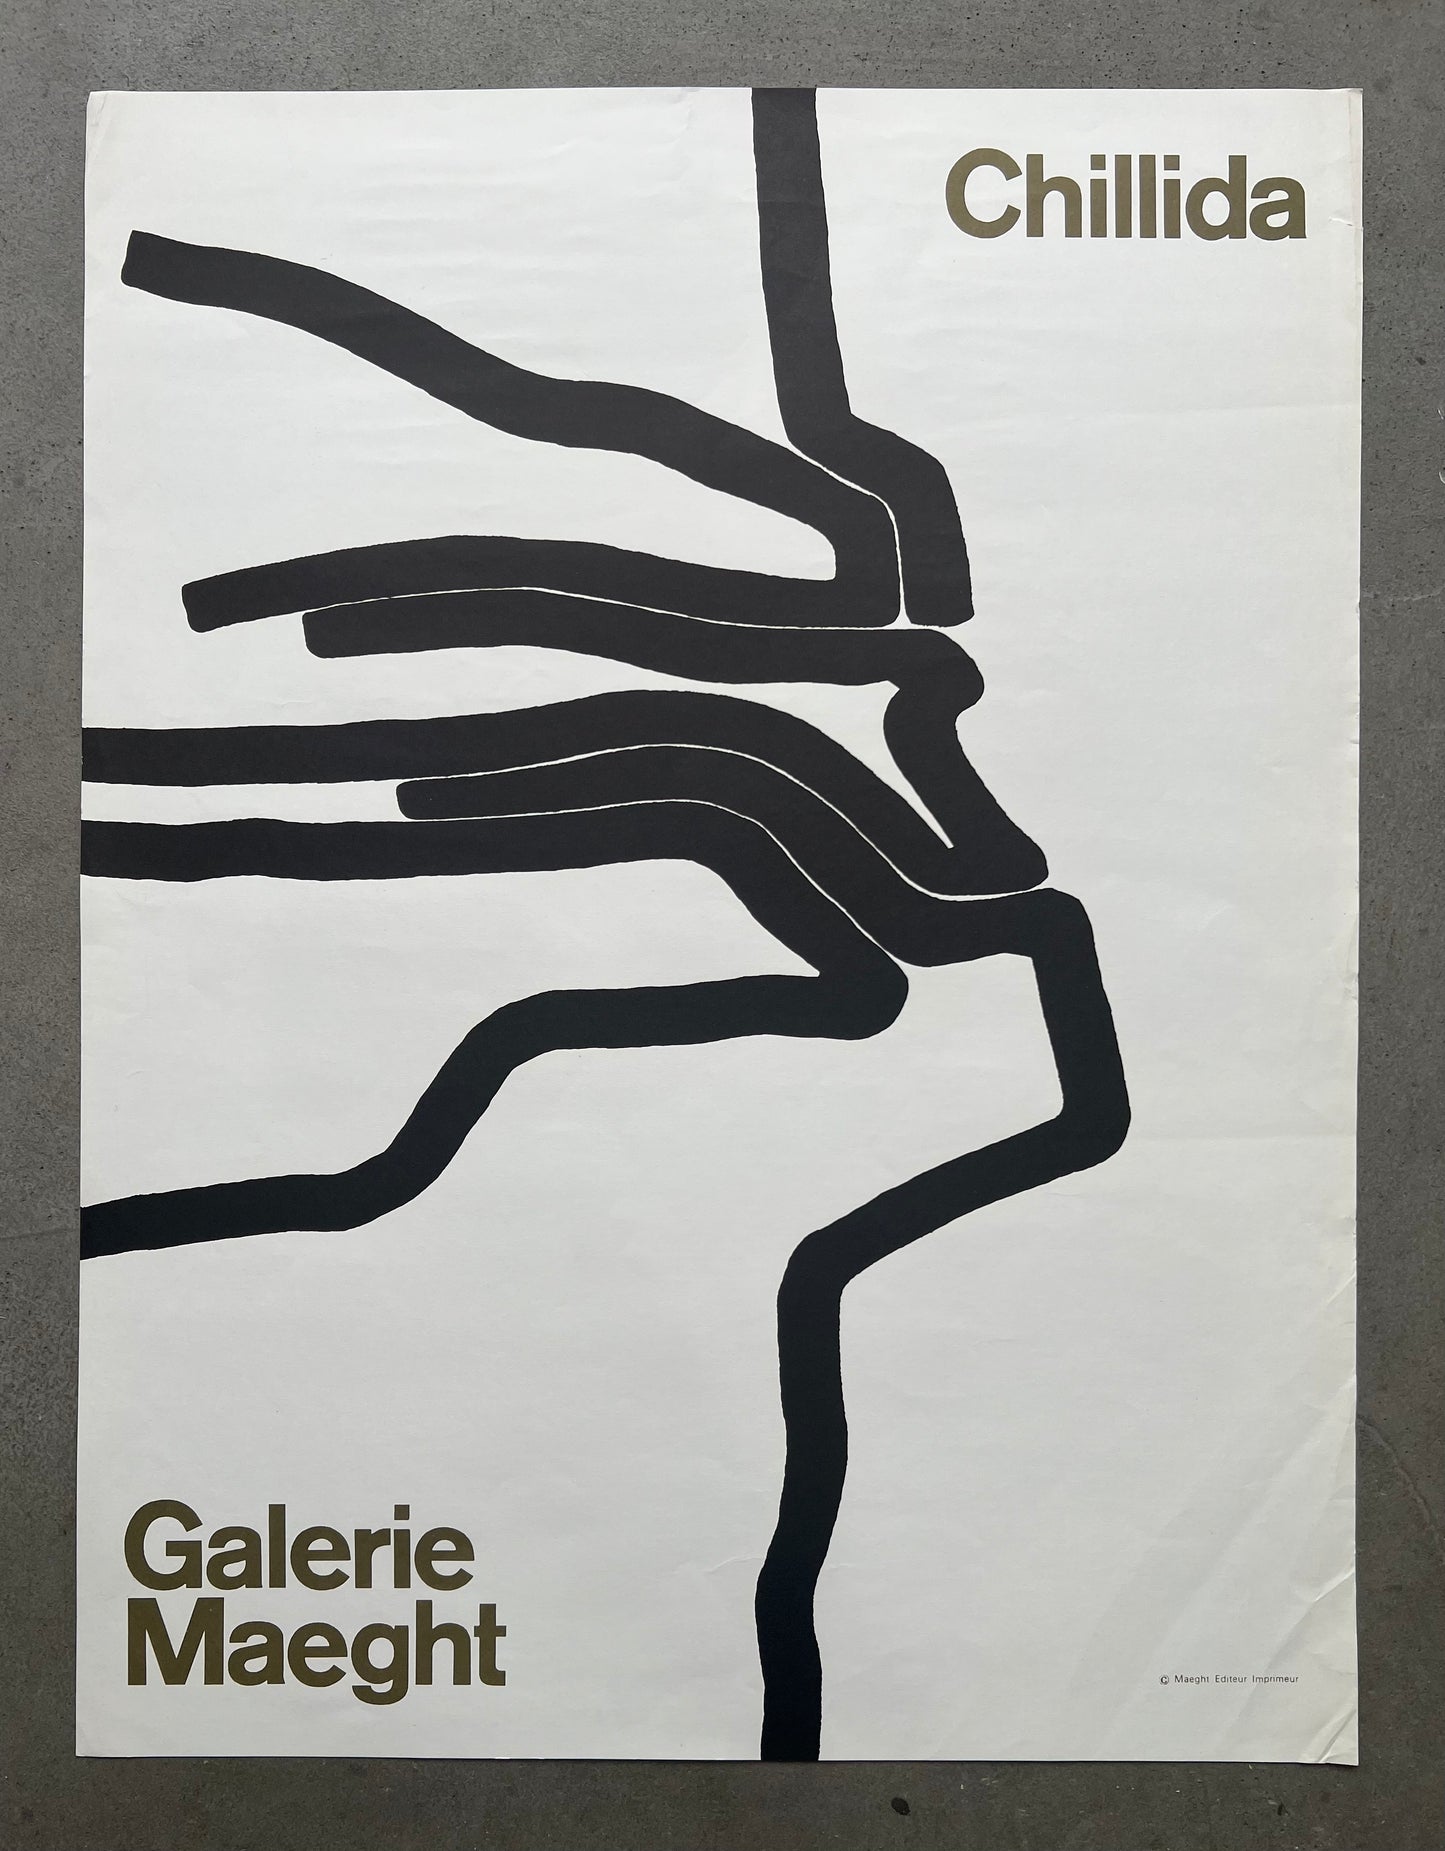 Eduardo Chillida. “Galerie Maeght”, 1964